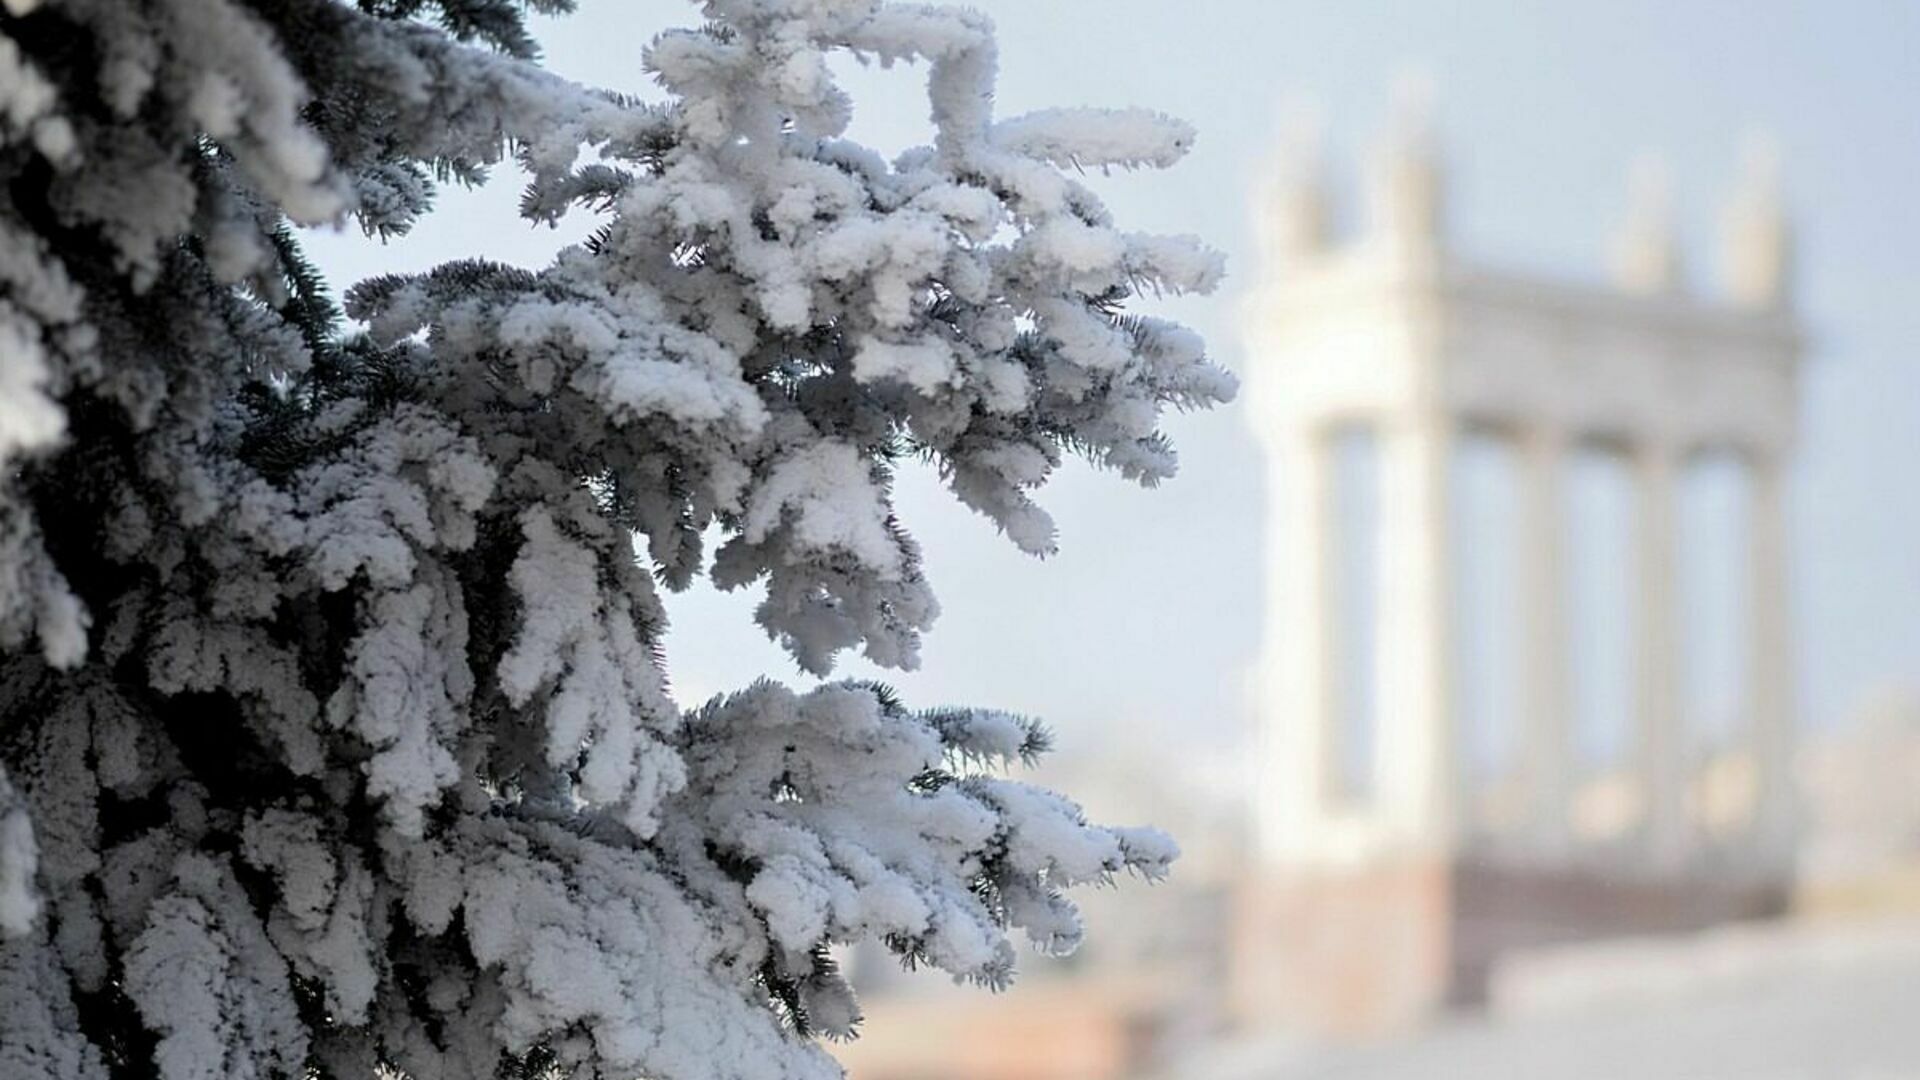 Гололед и мороз до -12 ожидаются в Волгоградской области 1 декабря